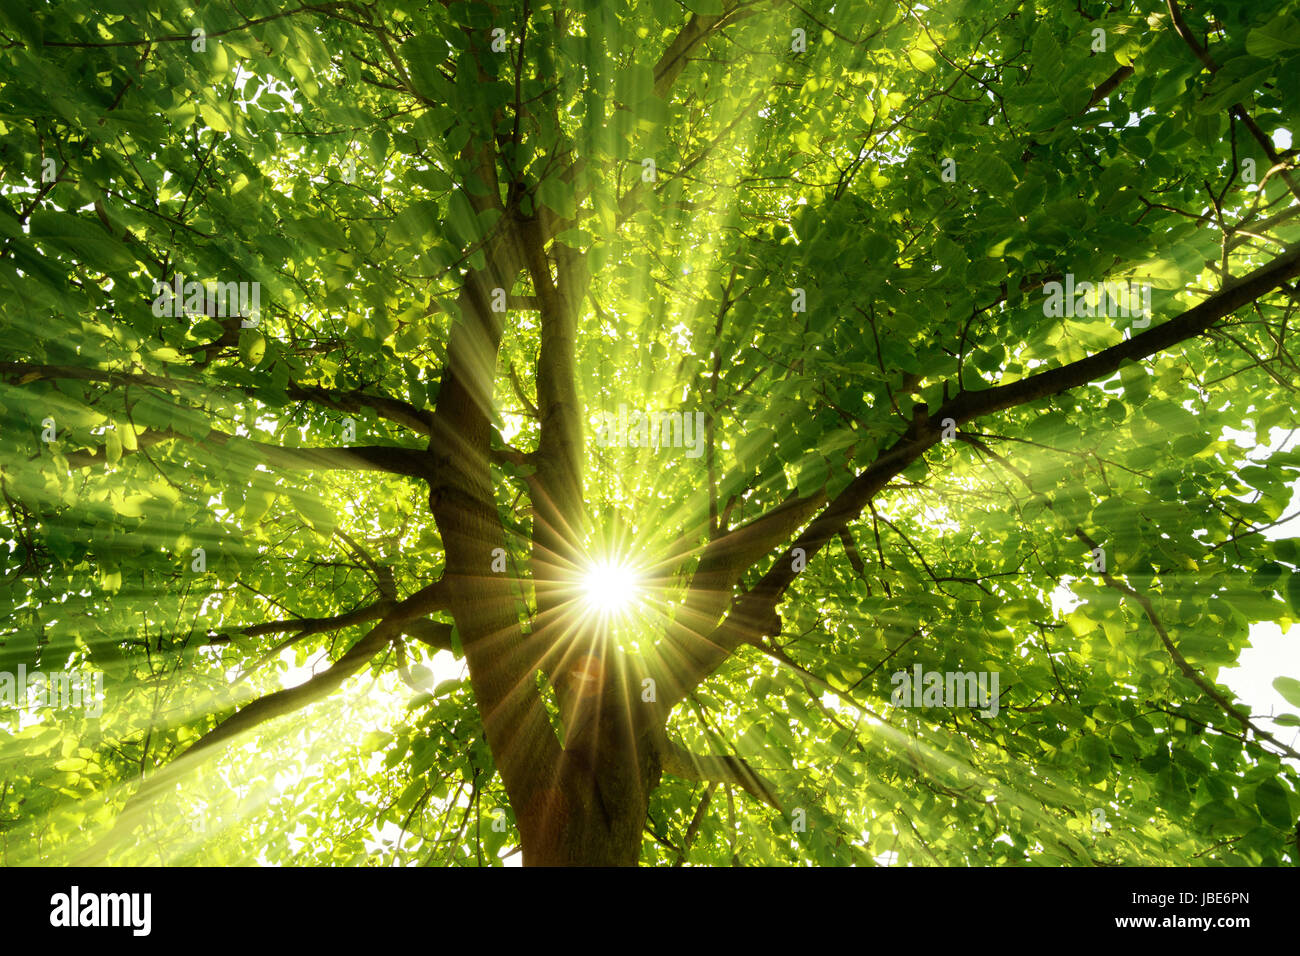 Die mittig platzierte Sonne strahlt effektvoll durch einen großen Baum Foto Stock